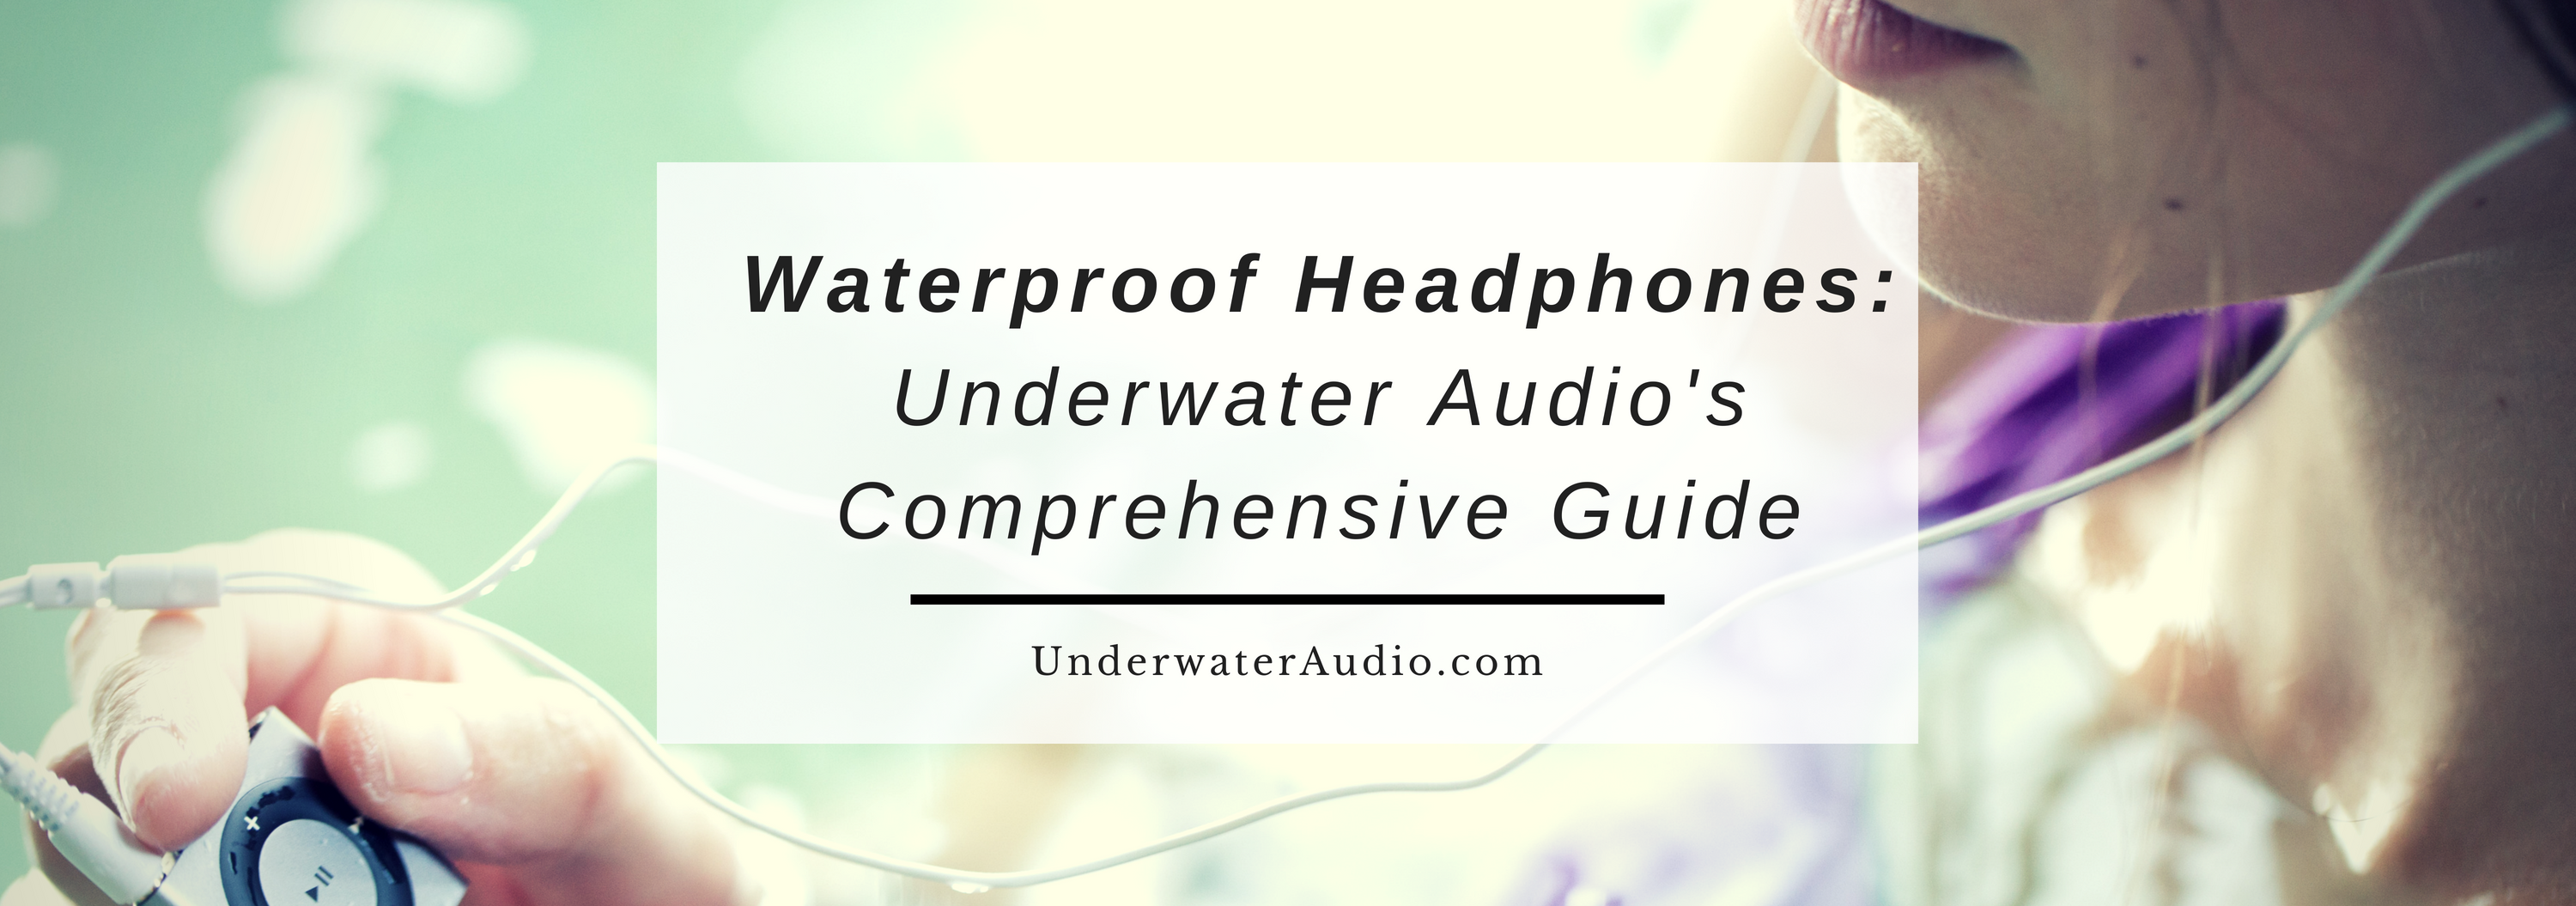 Waterproof Headphones: Underwater Audio's Comprehensive Guide